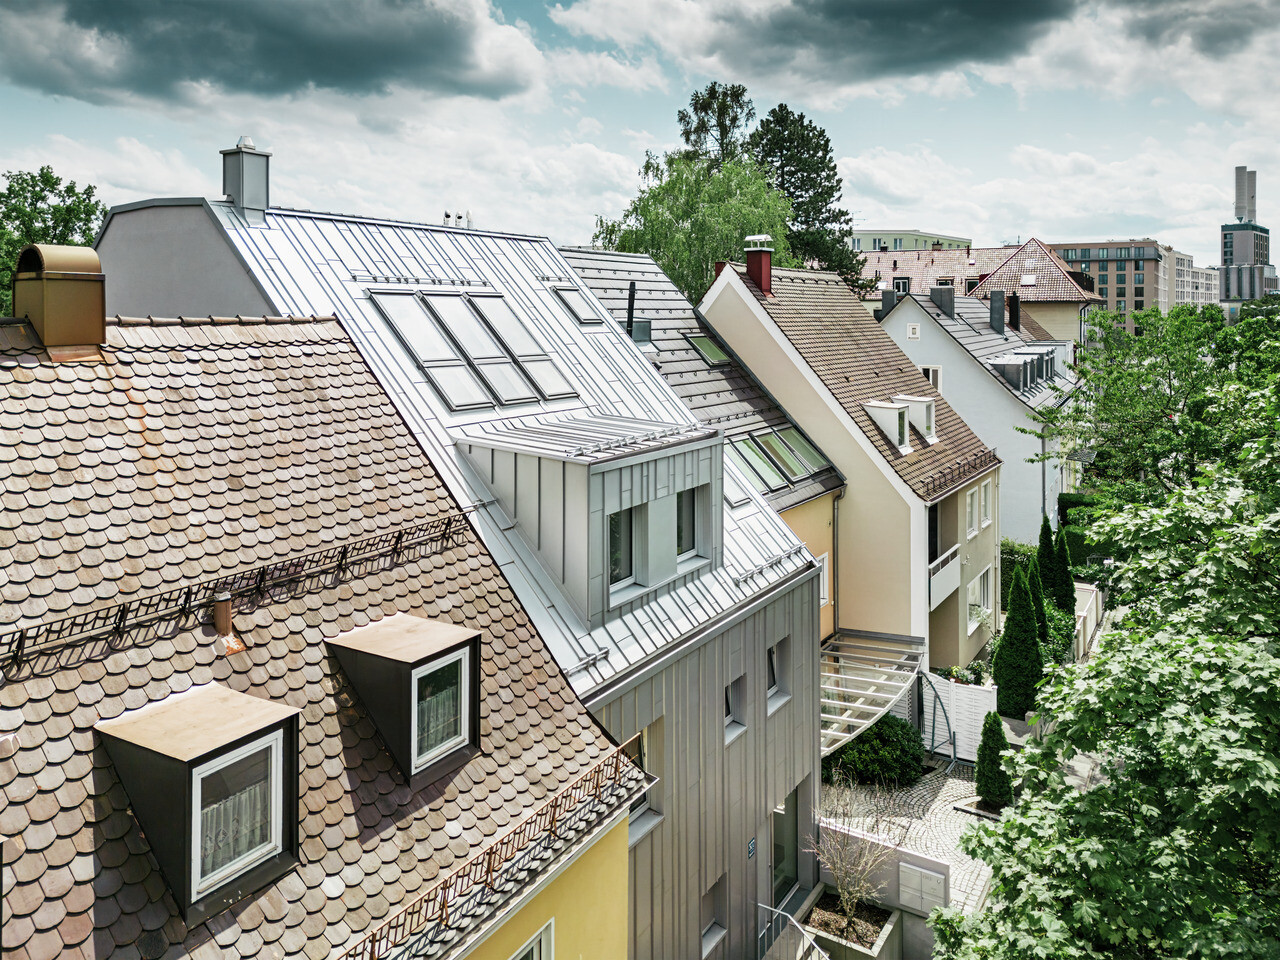 Pohled na střechy řadové zástavby rodinných domů v kombinací s tradičními taškovými střechami a moderních hliníkových střech Prefalz ve stříbrné metalíze. Jeden dům vyniká svou zrekonstruovanou, lesklou kovovou střechou a odpovídajícími střešními okny. Zelená, hustá vegetace zahrad dotváří obraz a vytváří přirozený kontrast k městské architektuře. V pozadí jsou vidět obrysy moderních městských budov.